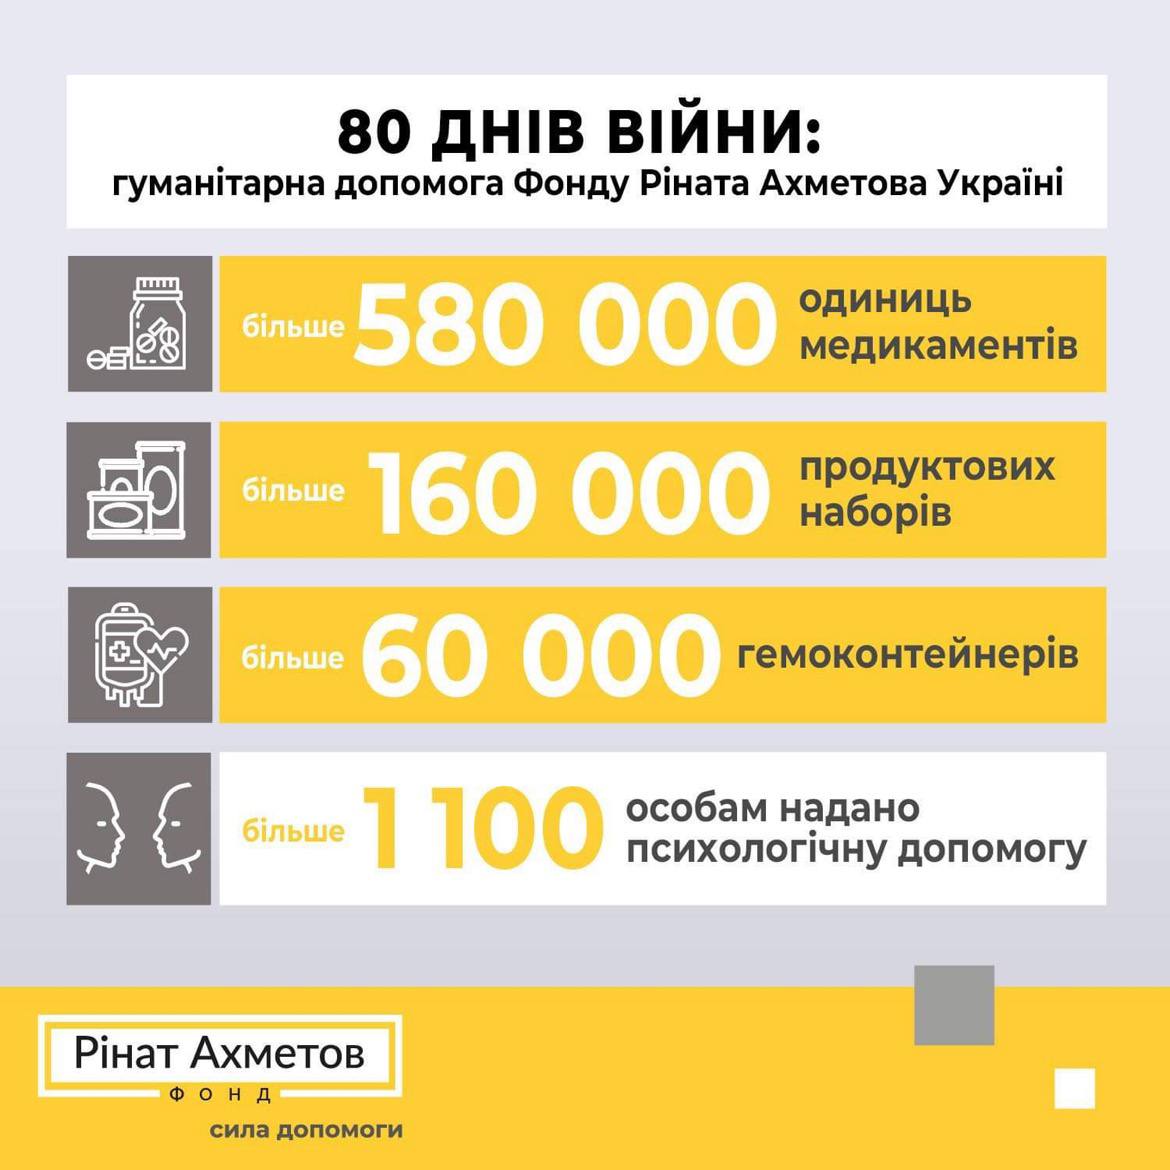 80 днів війни: гуманітарна допомога Фонду Ріната Ахметова Україні